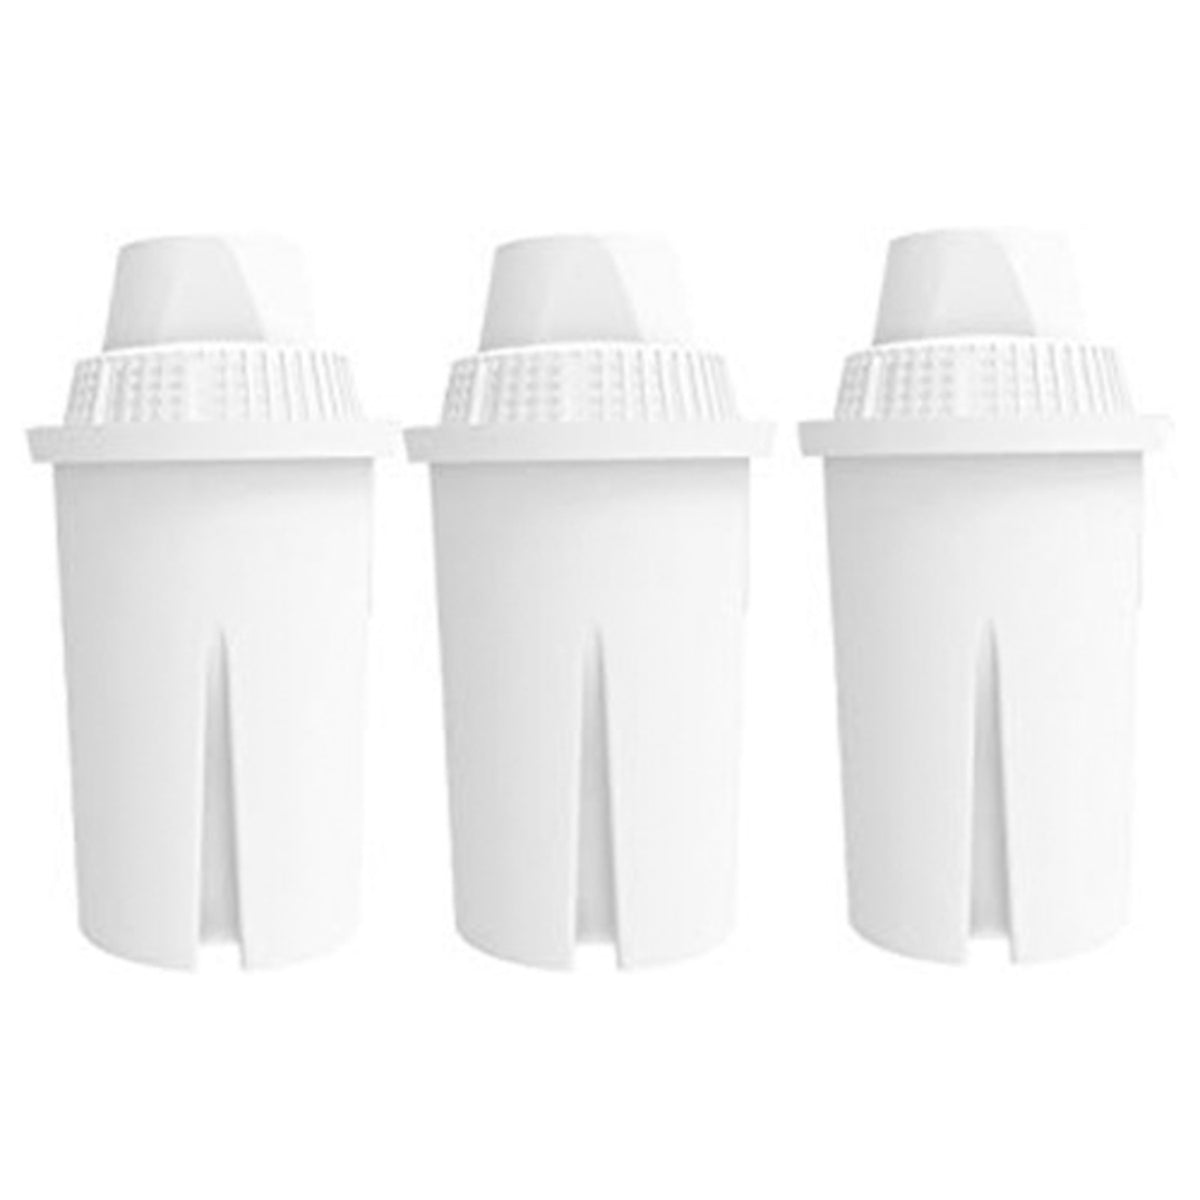 Laica F3A2 jug filters